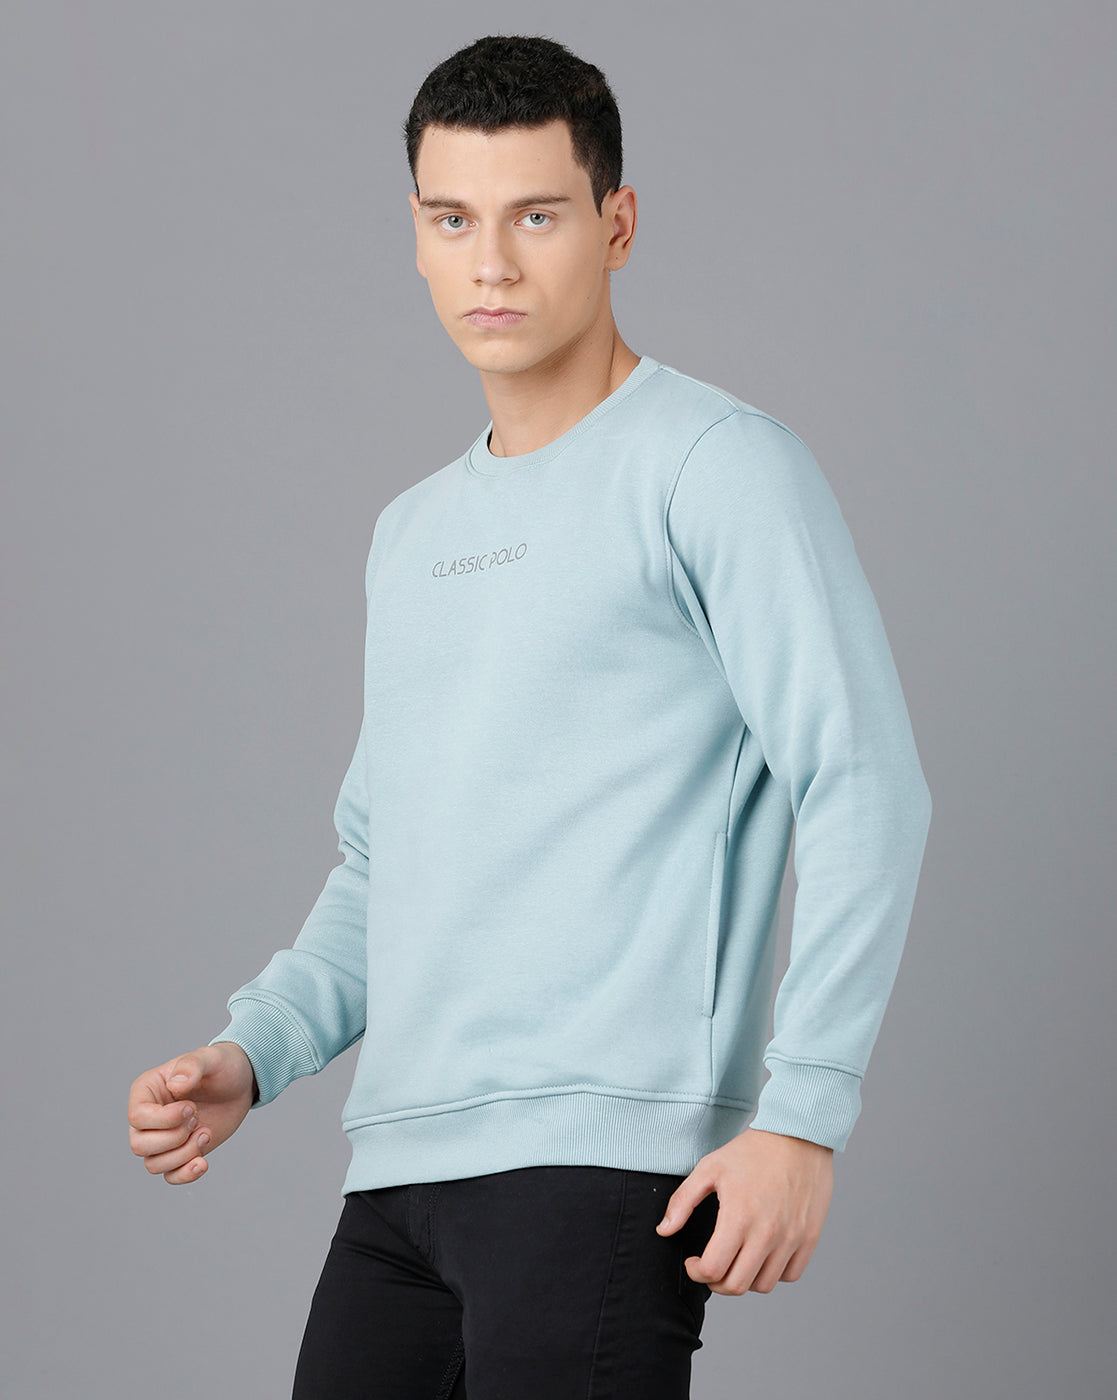 Solid color o-neck sweatshirt, Light Grey